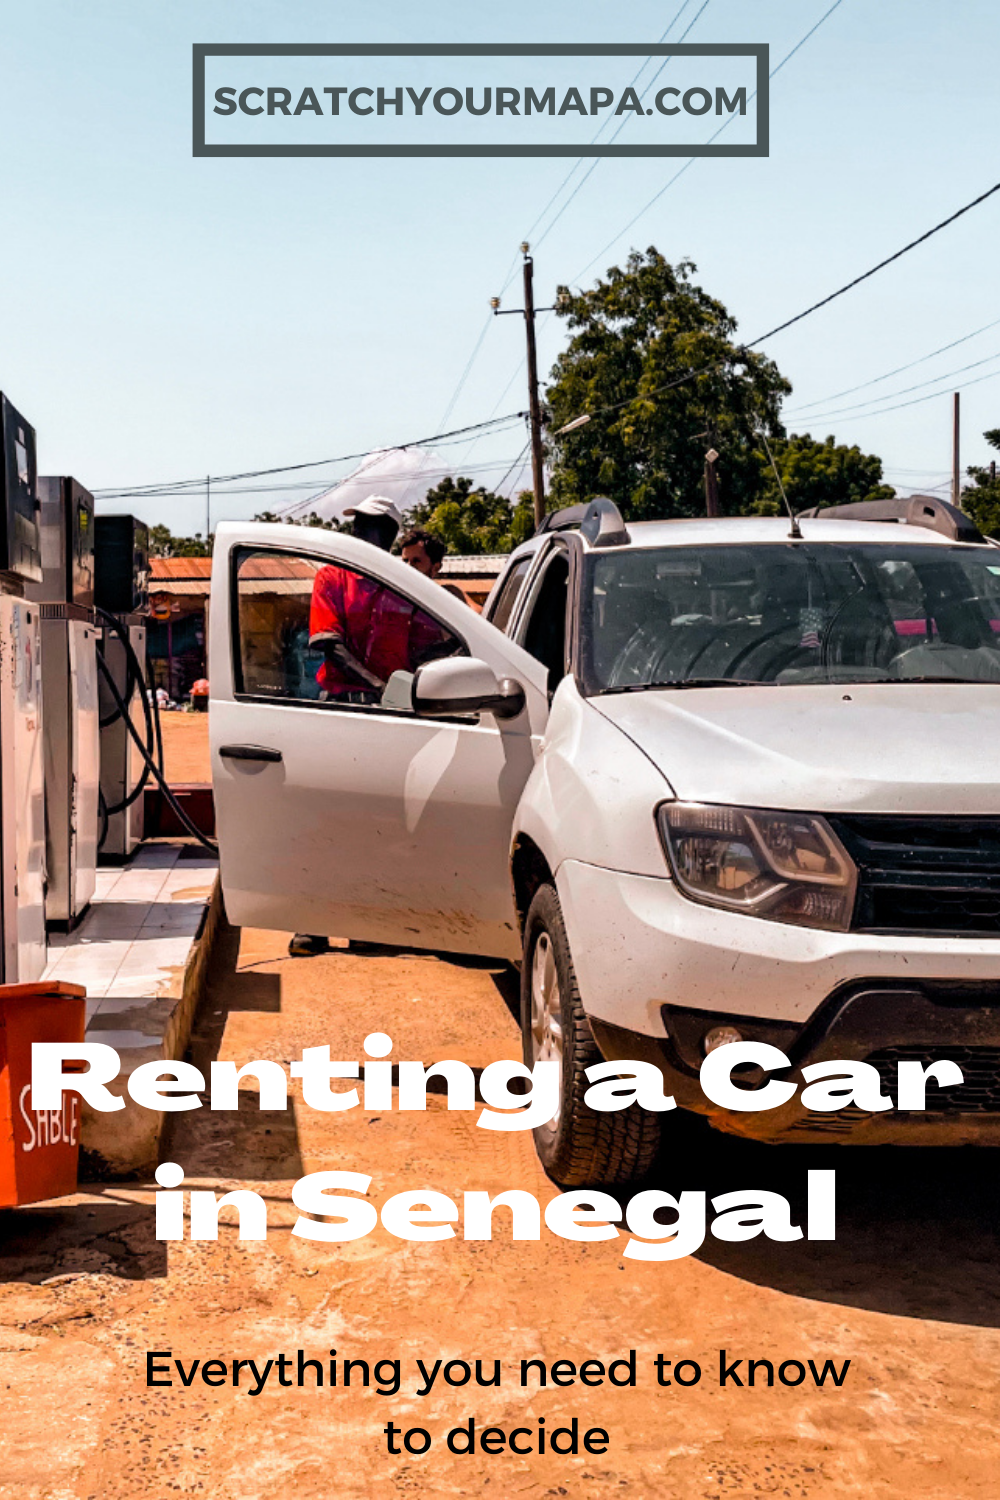 Rent a Car in Senegal Pin